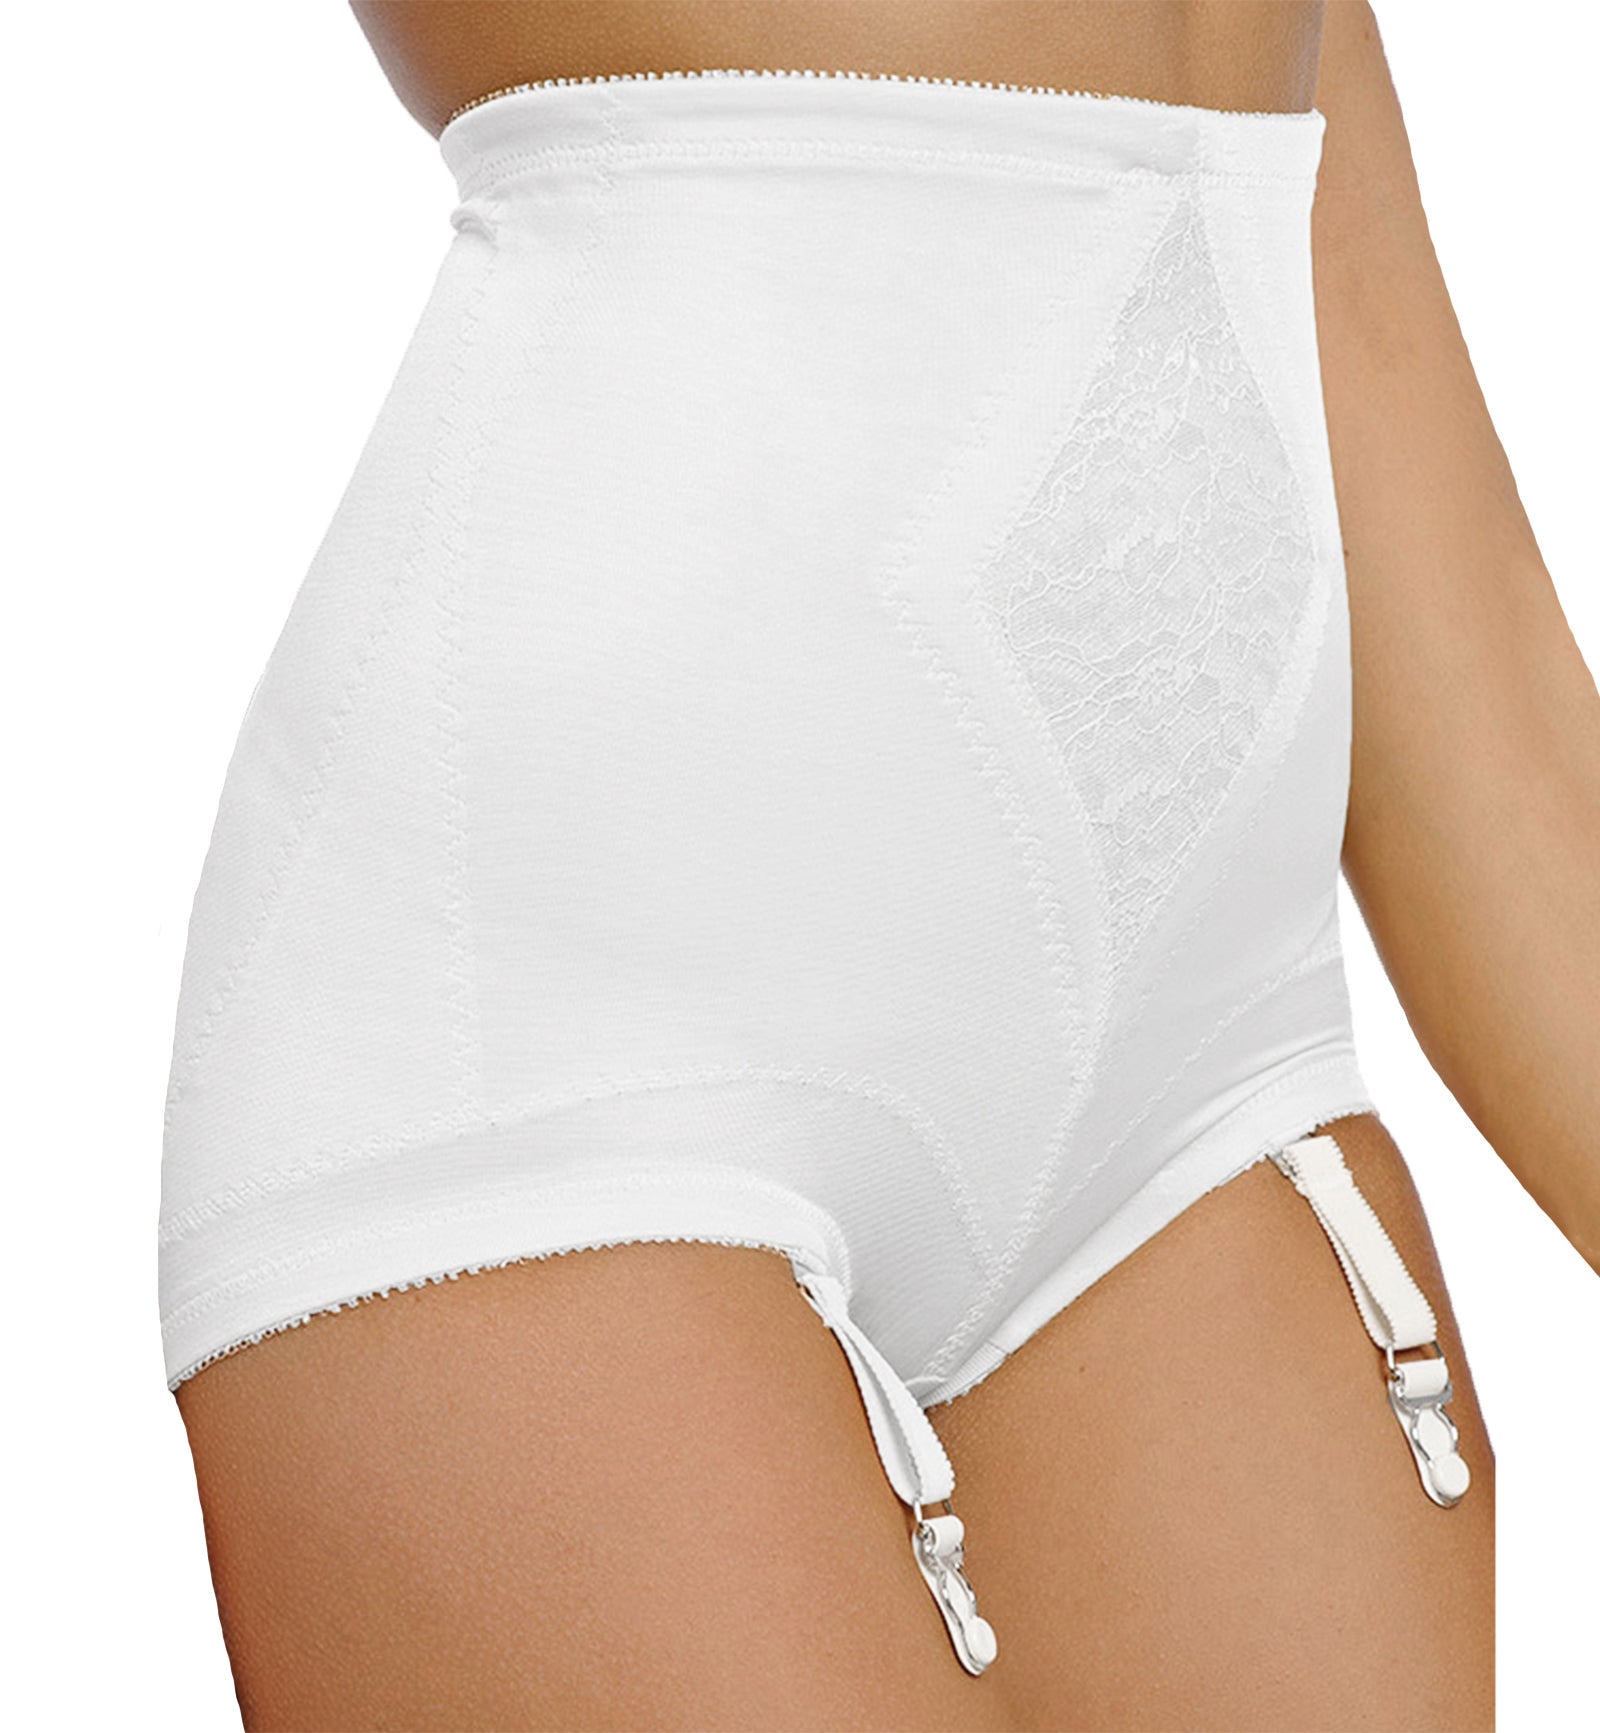 Rago Medium Control Panty Brief (6195),Small,White - White,Small